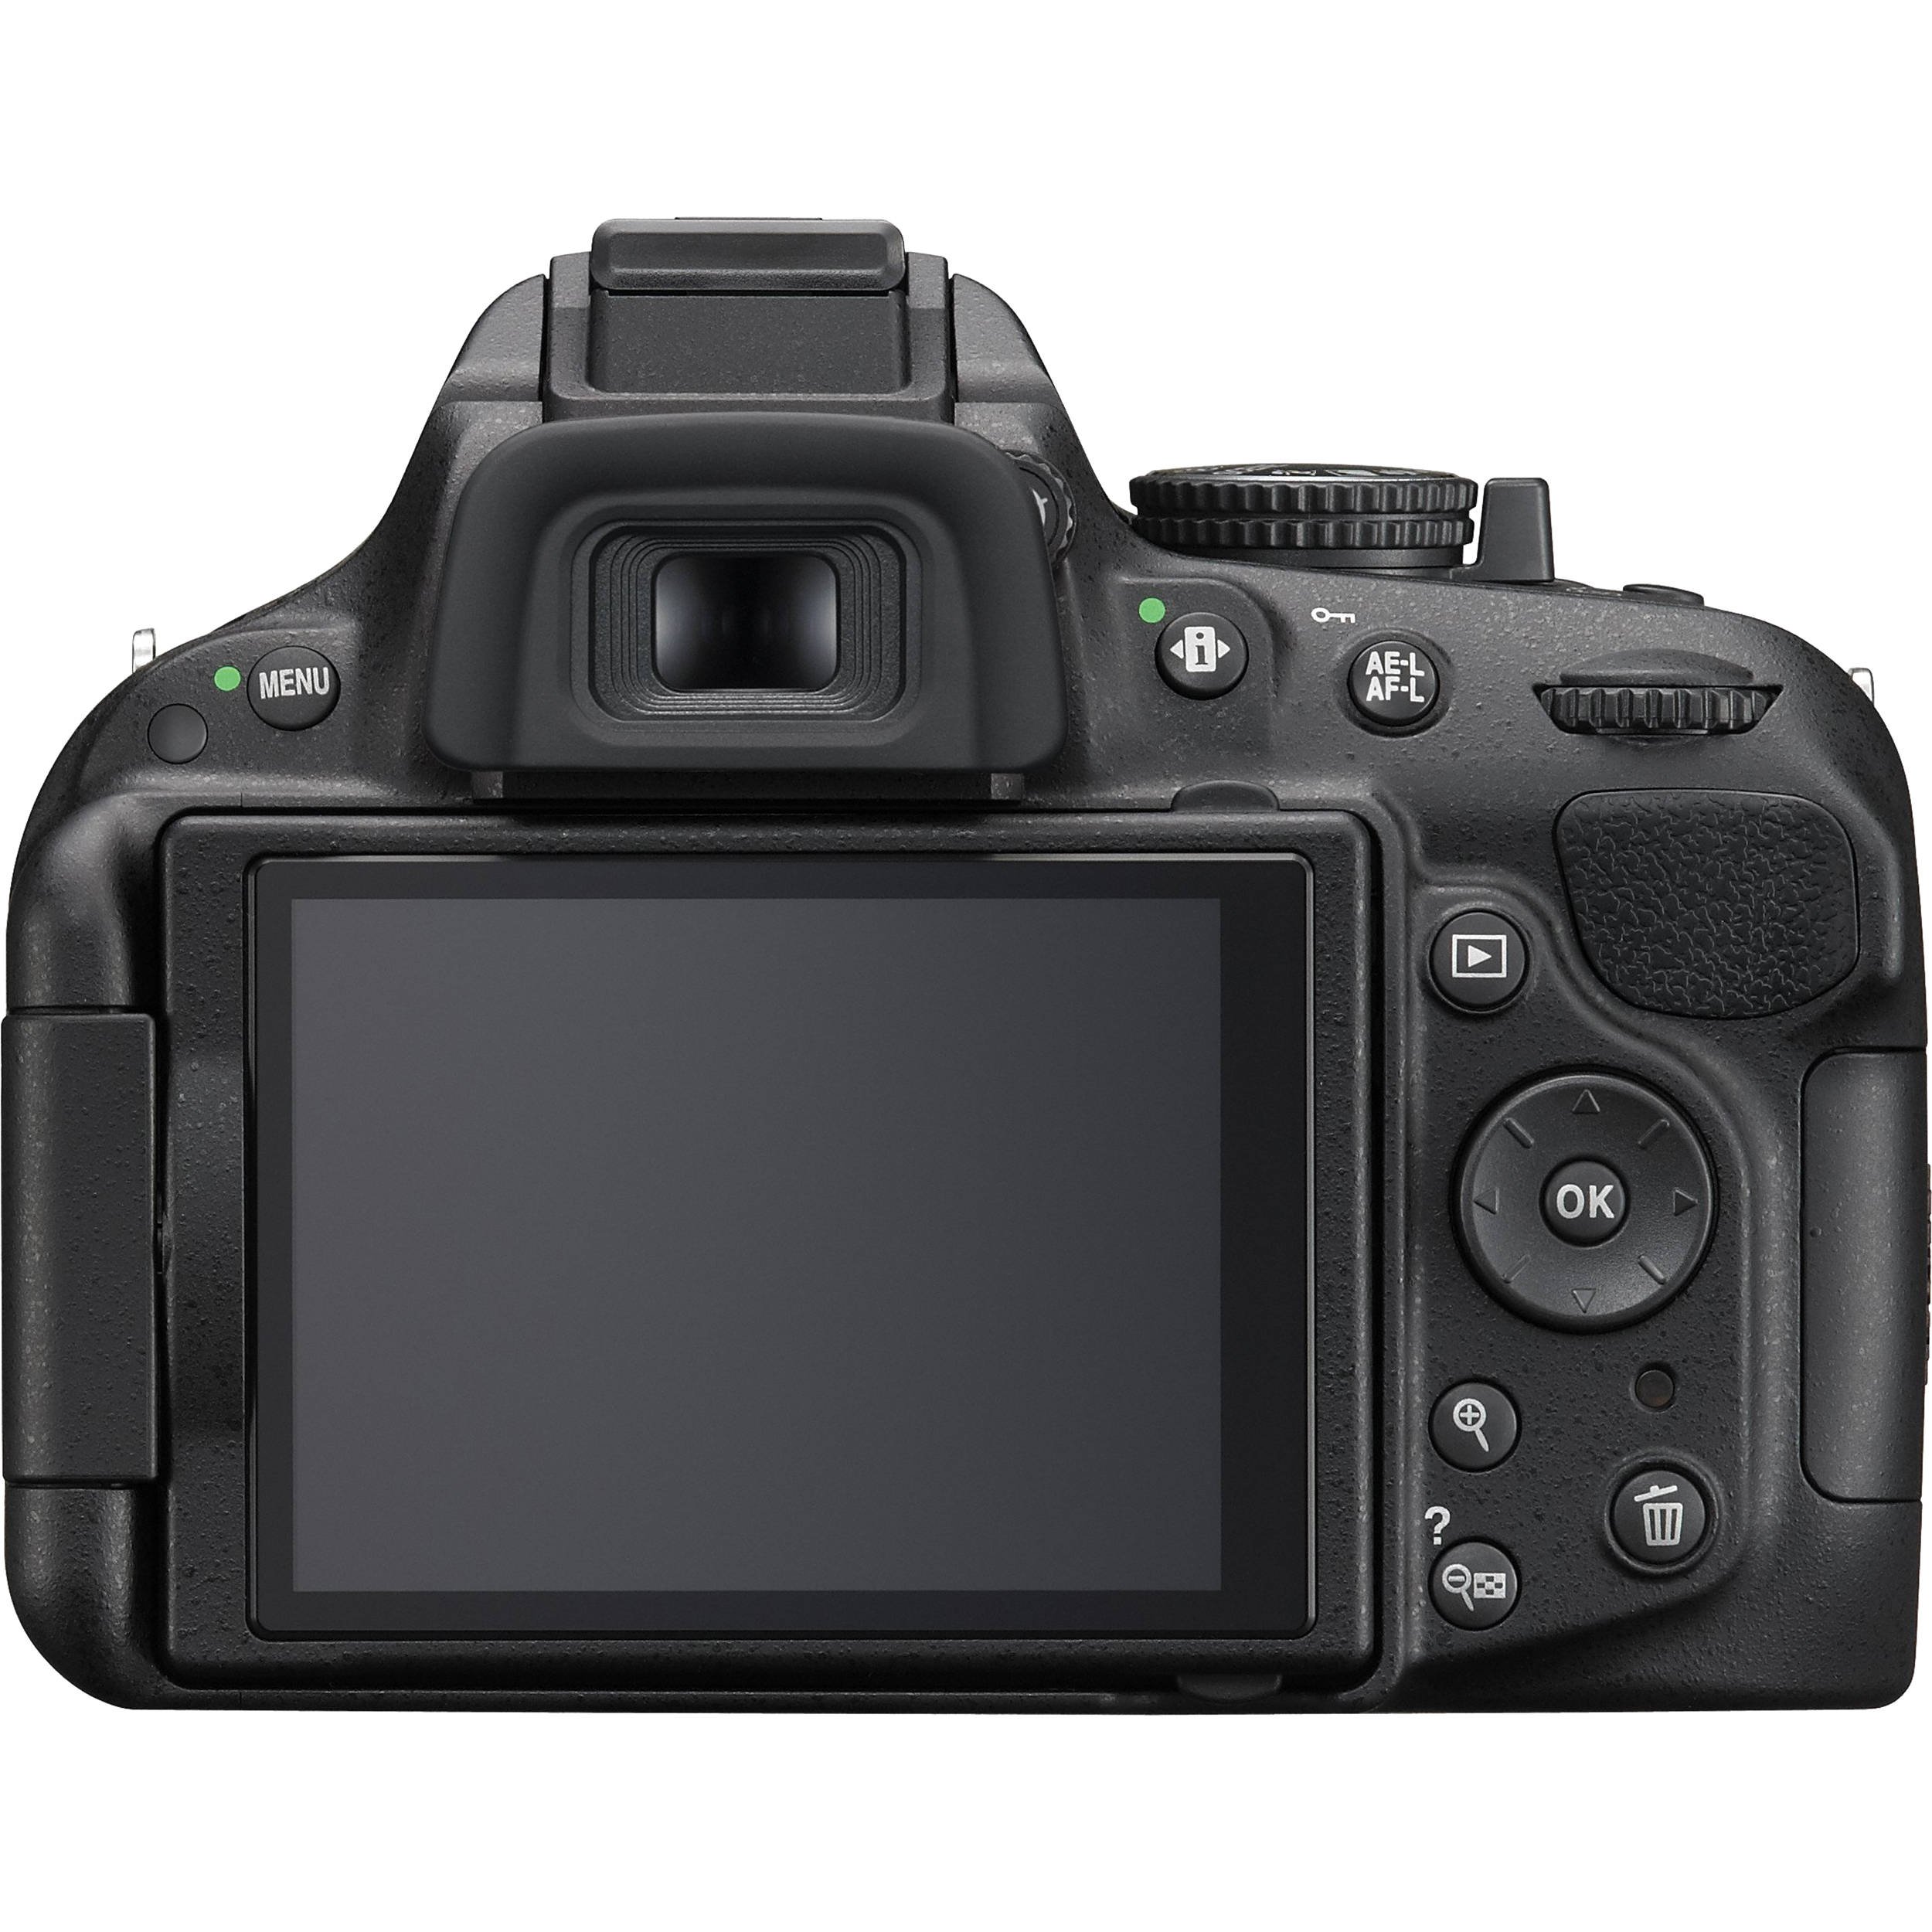 Nikon D5200 24.1 MP CMOS Digital SLR with 18-105mm f/3.5-5.6 AF-S DX VR ED NIKKOR Zoom Lens (Black) (Discontinued by Manufacturer)